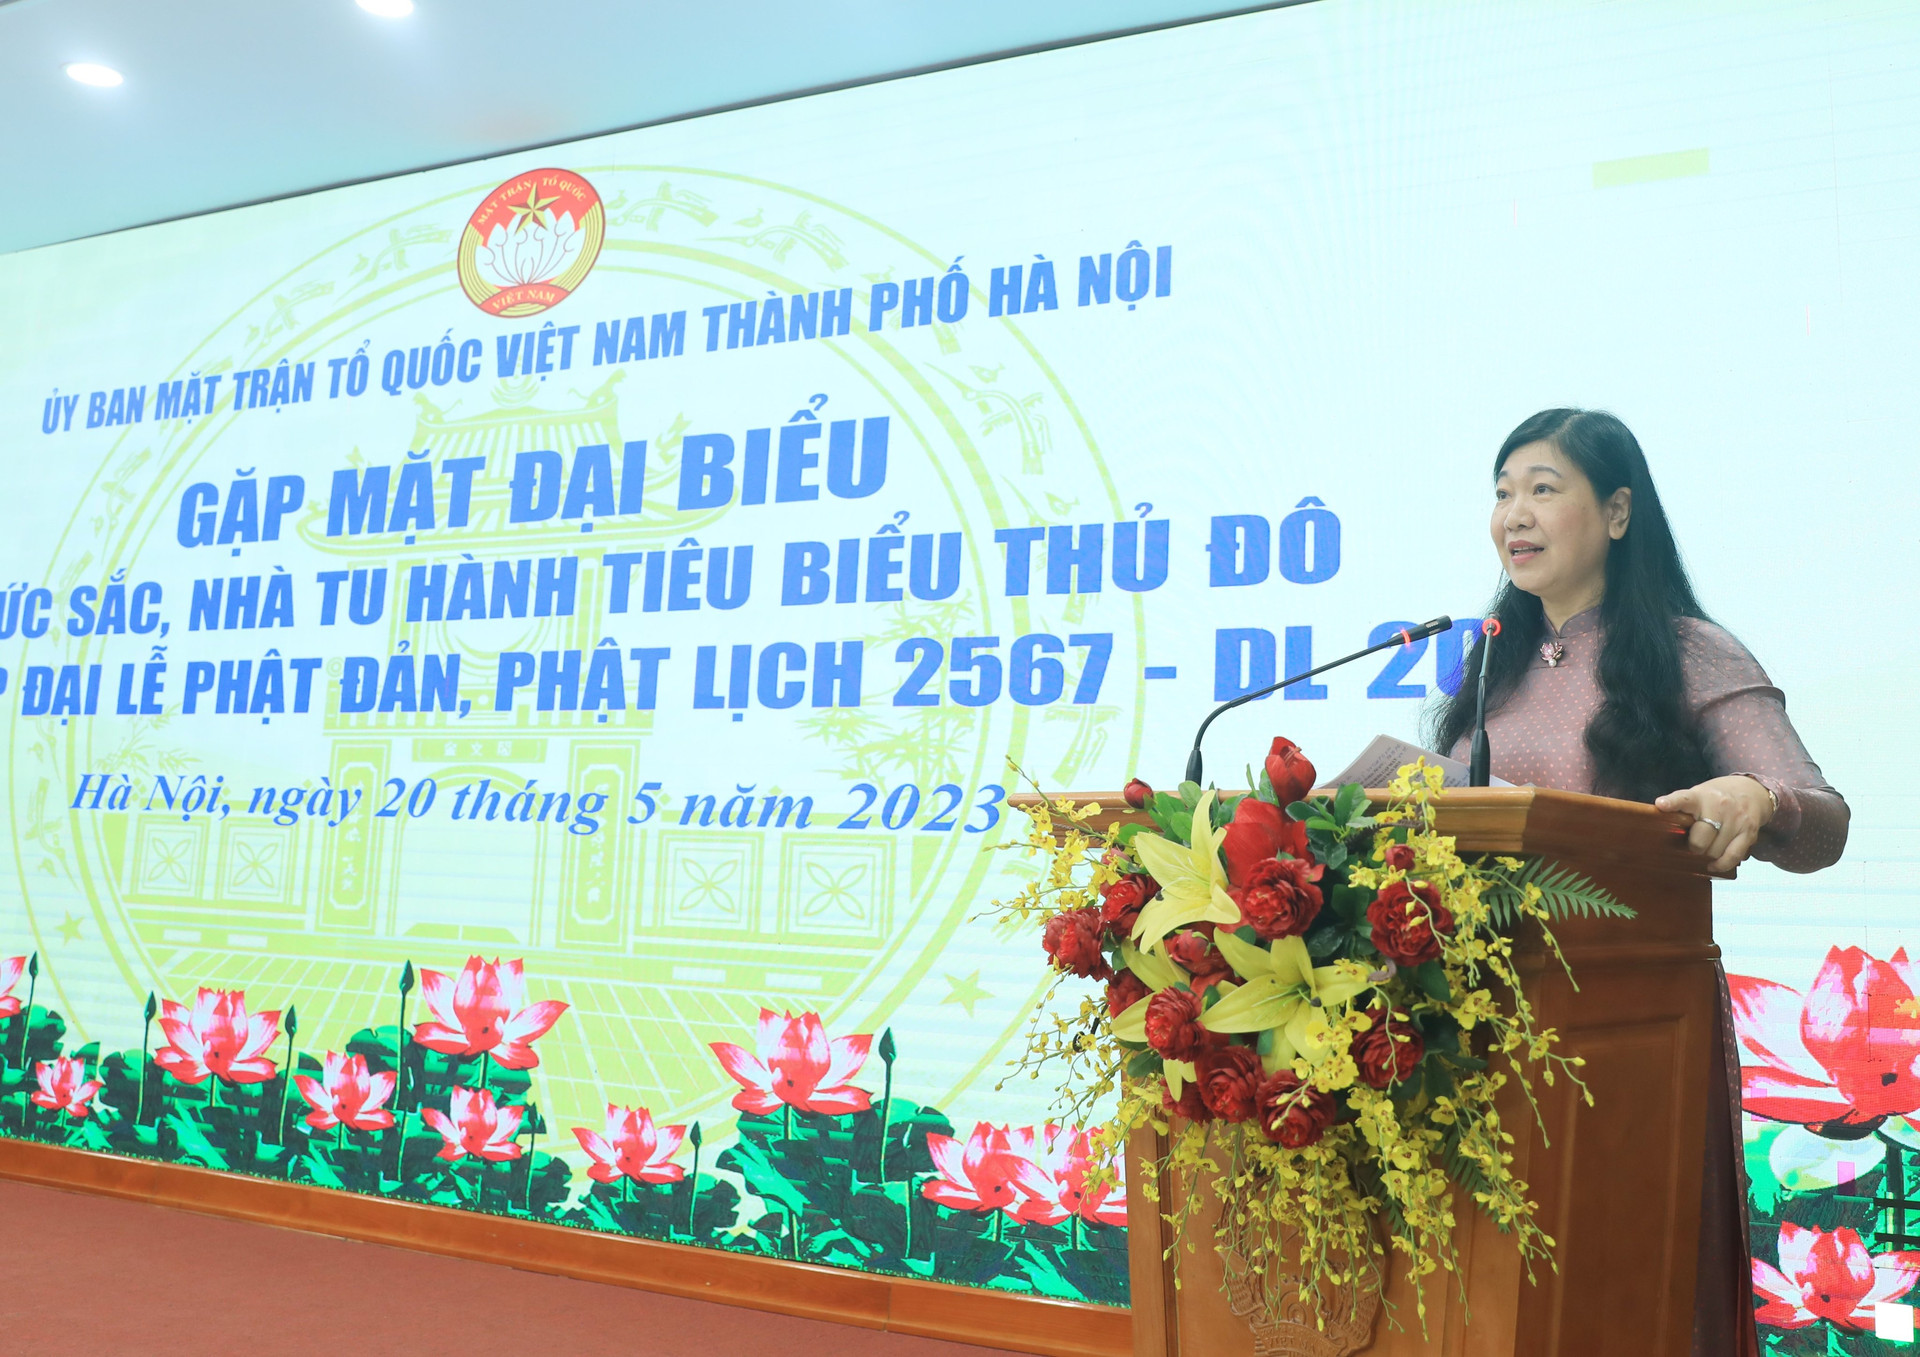 Bà Nguyễn Lan Hương, Chủ tịch Ủy ban MTTQ Việt Nam thành phố Hà Nội phát biểu tại buổi gặp mặt.